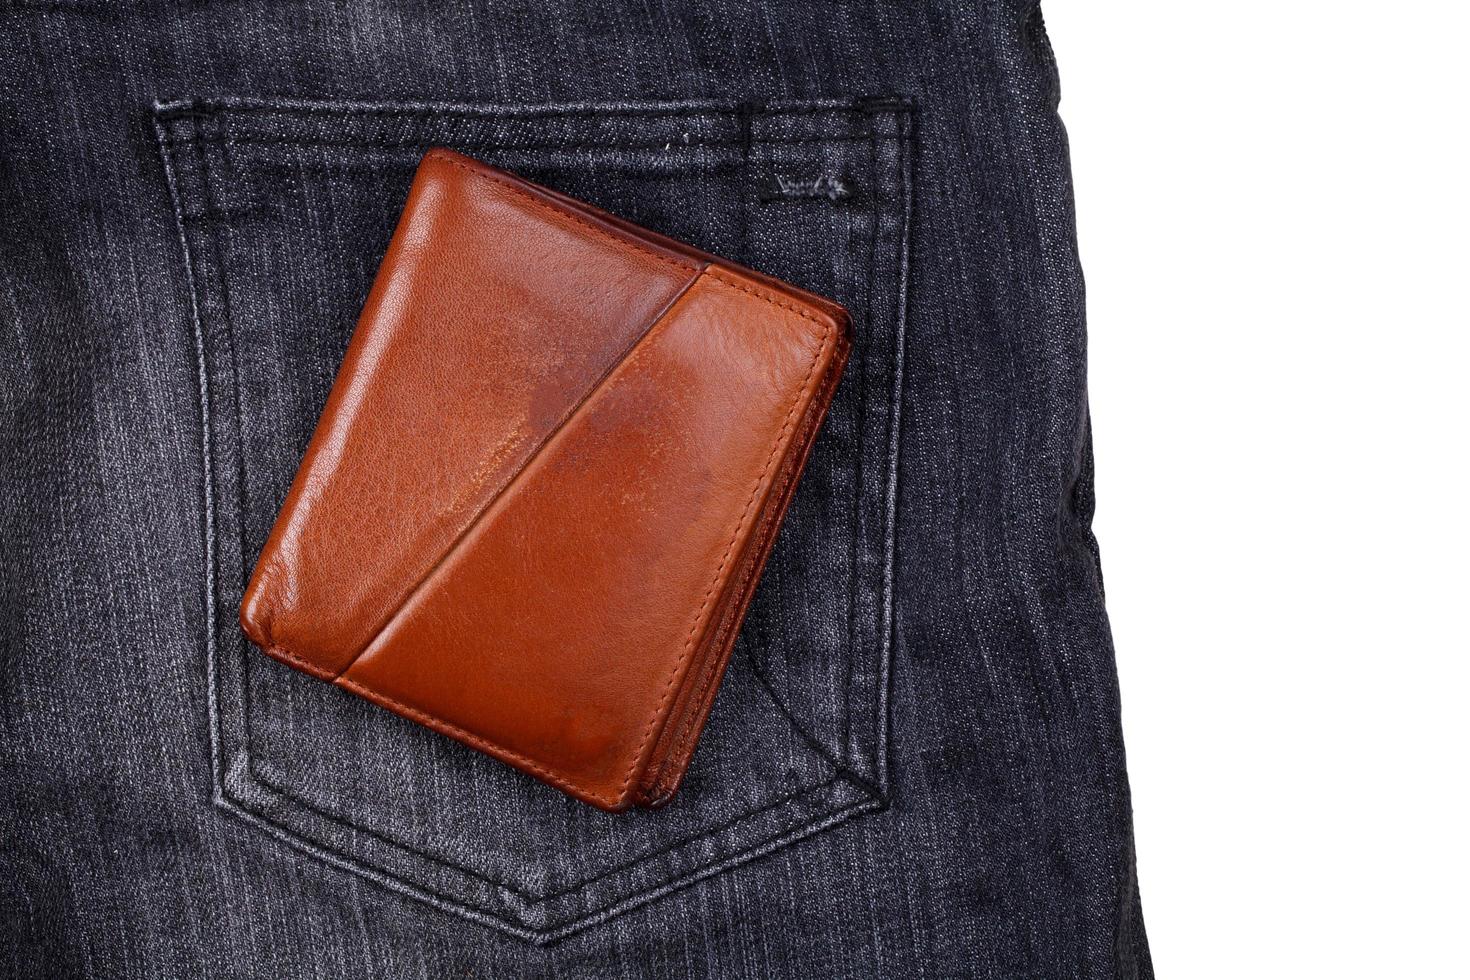 billetera marrón sobre jean negro foto